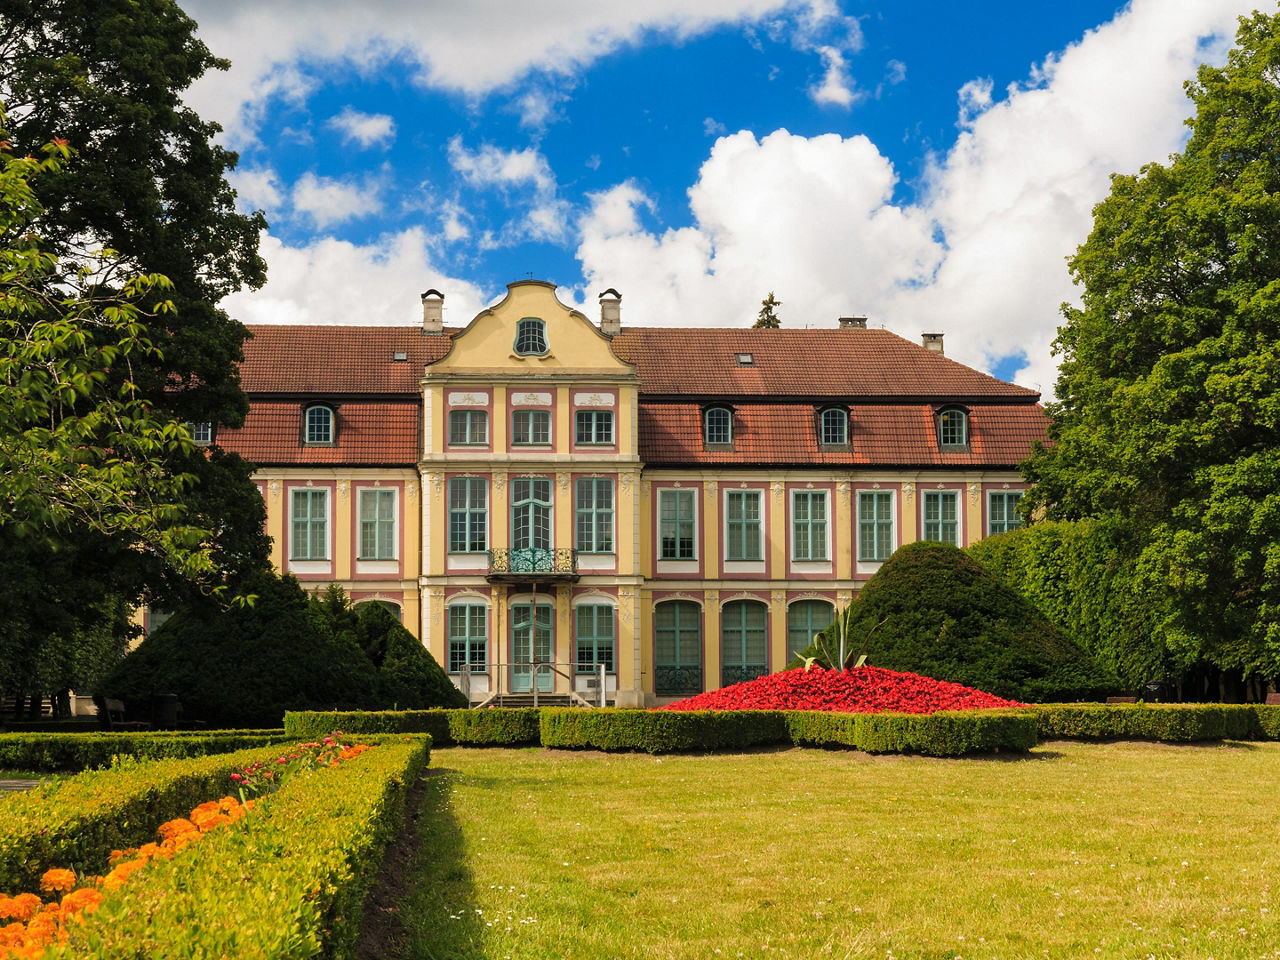 gdansk poland abbots palace